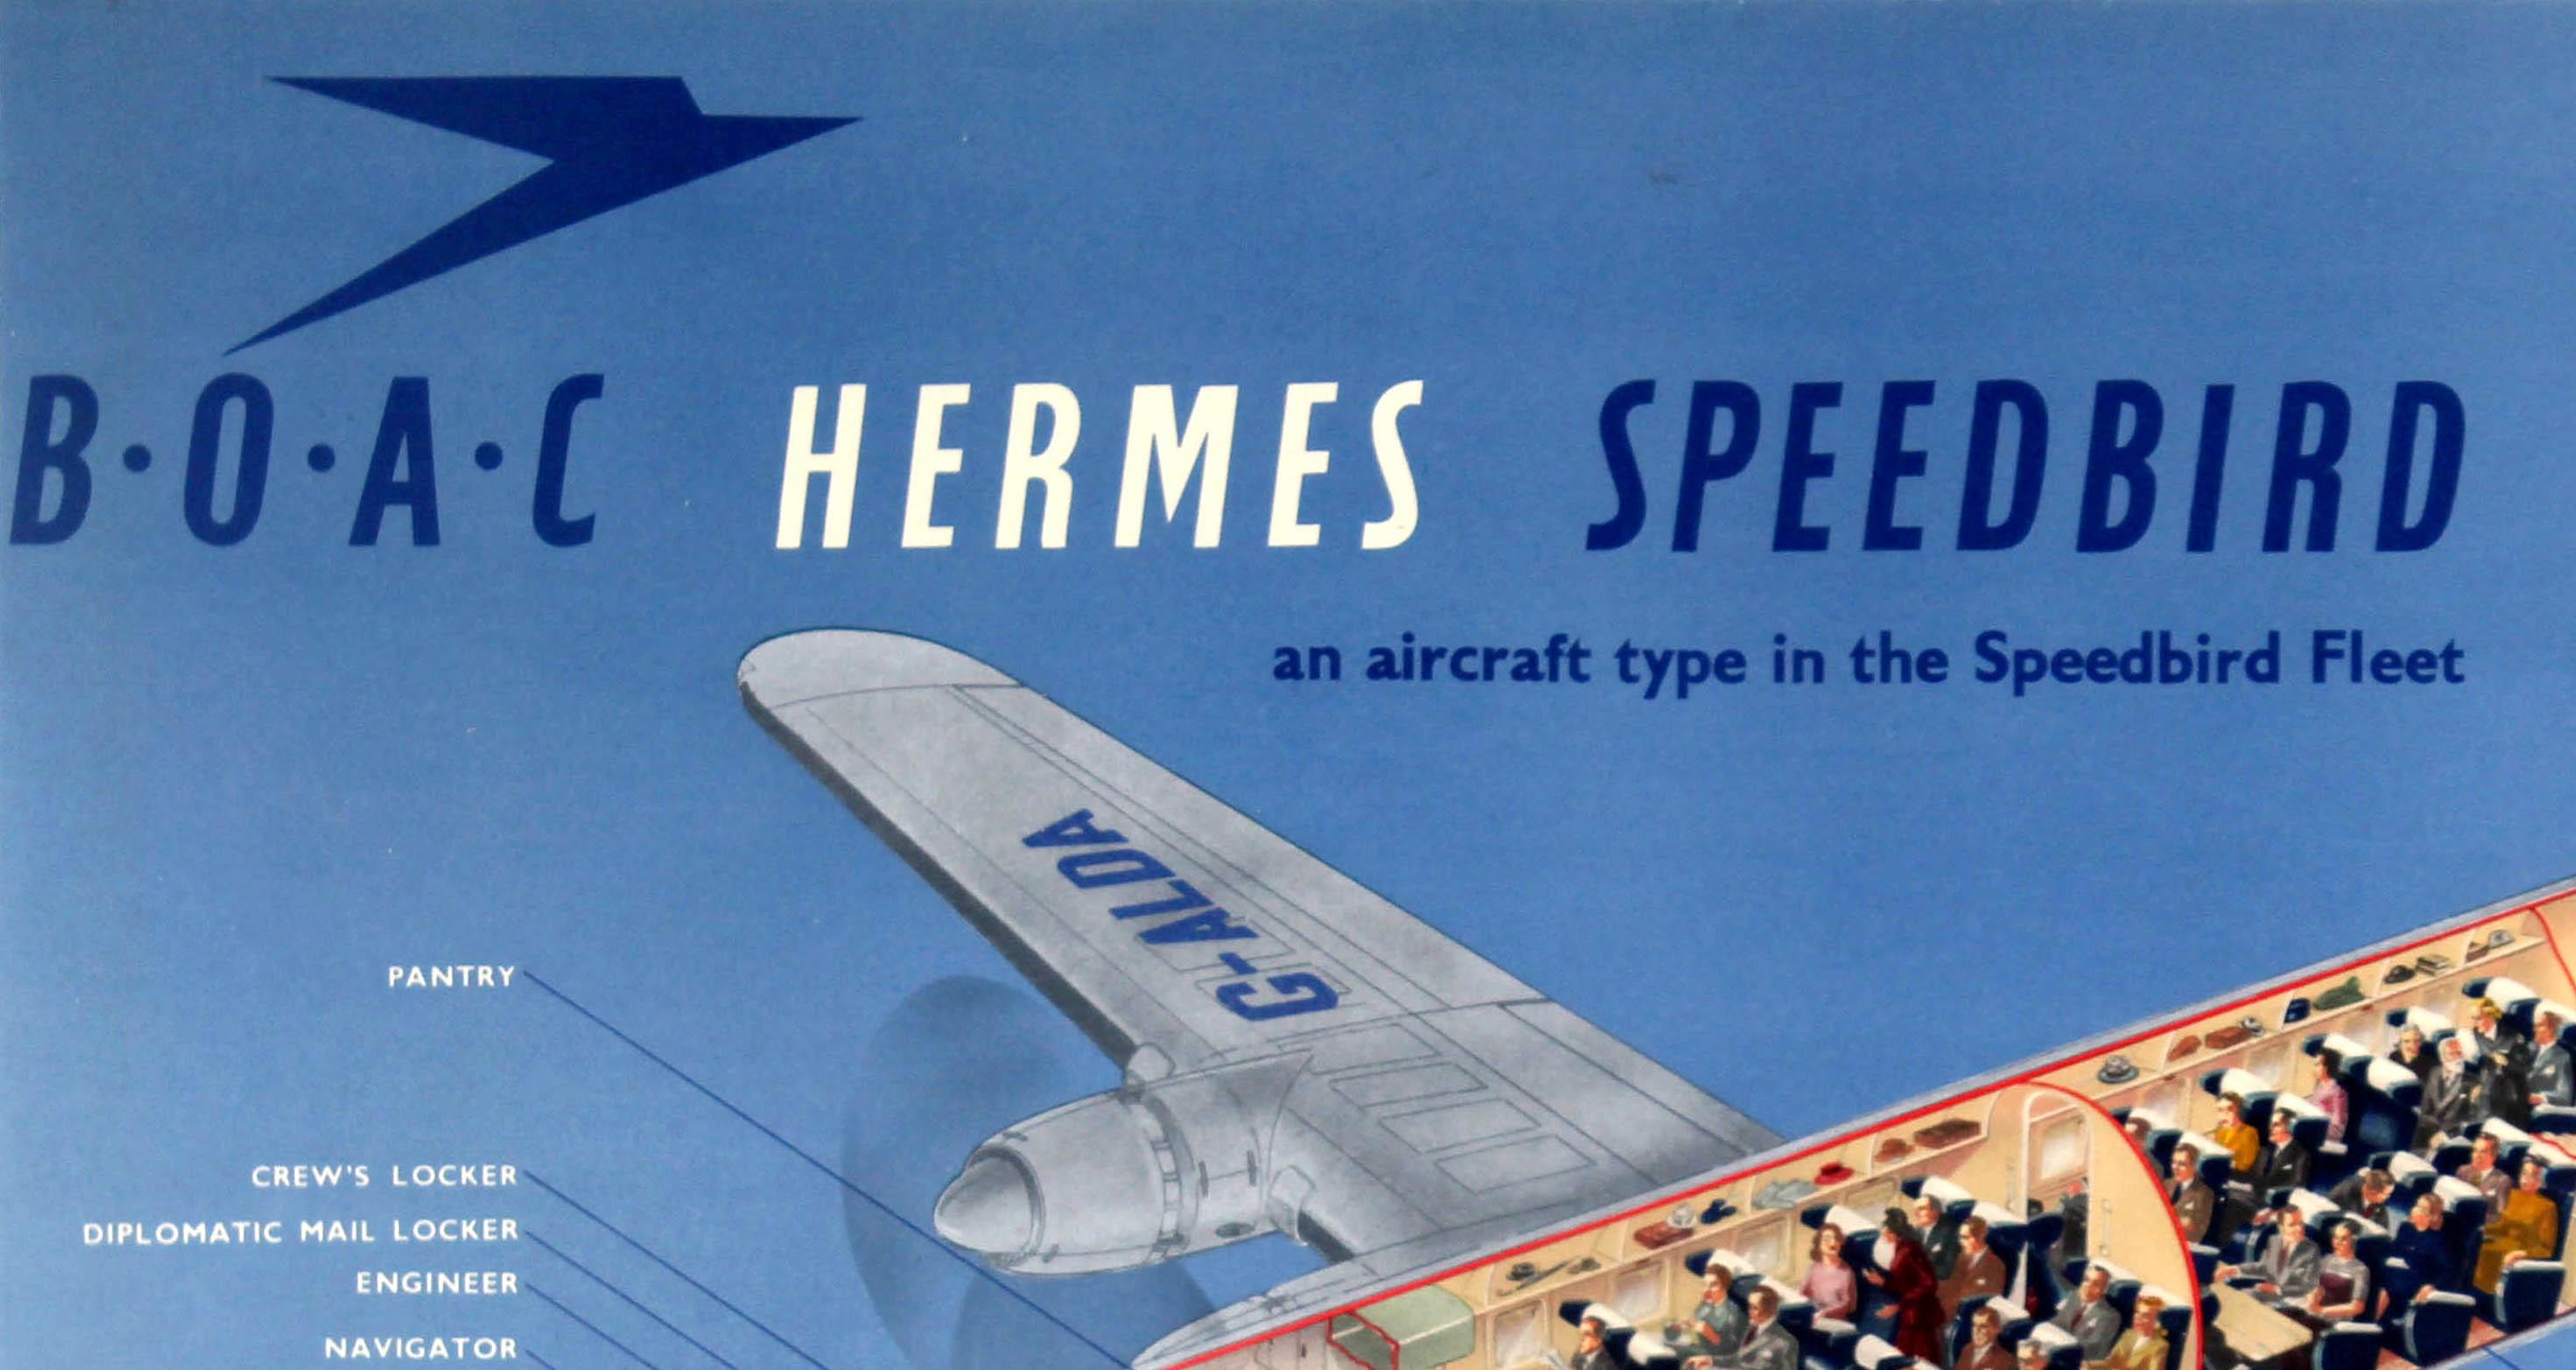 Affiche publicitaire de voyage vintage originale pour C.I.A.C.. Hermes Speedbird est un type d'avion de la flotte Speedbird. Grande image représentant un plan technique découpé du tout nouvel avion sur un fond bleu ciel montrant la structure de